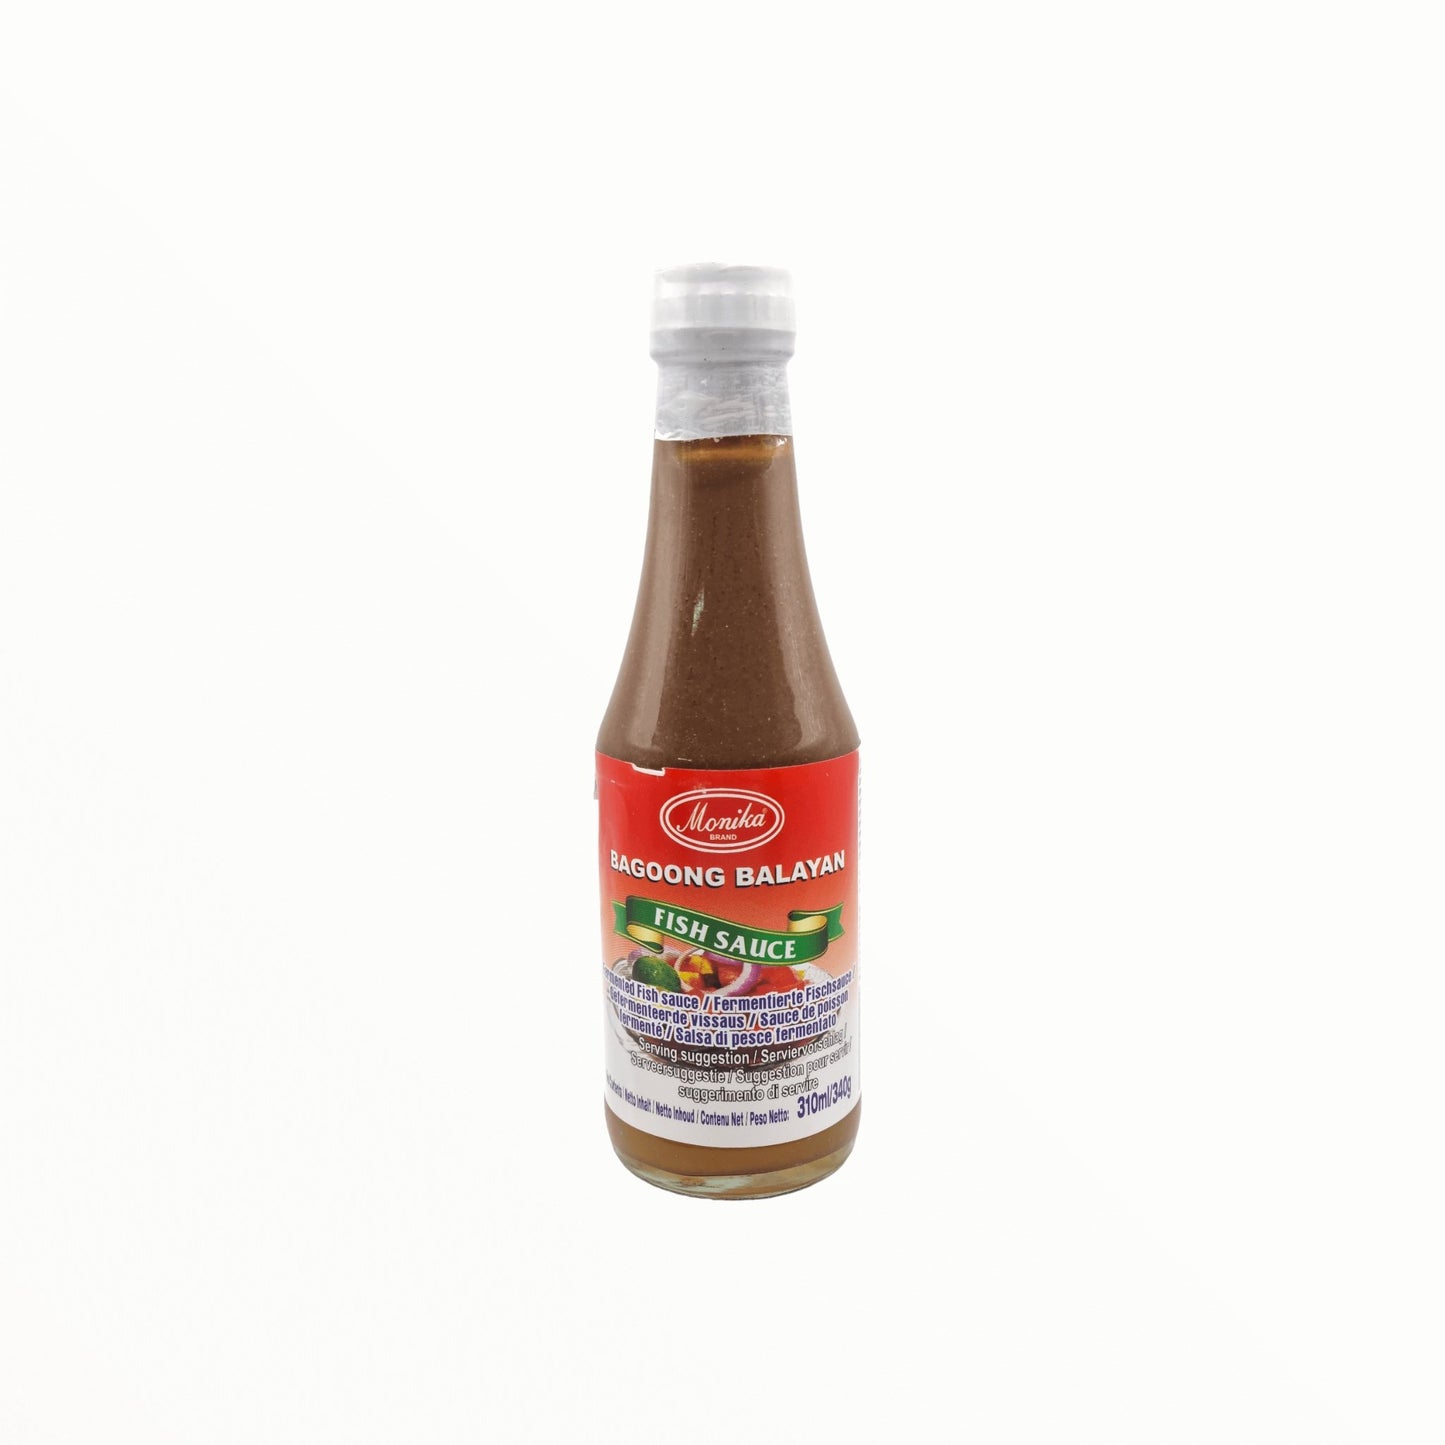 Monika - Bagoong Balayan- Sauce de poisson fermenté - Ingrédient clé pour  la préparation du pad thaï - Produit asiatique - 310 Ml